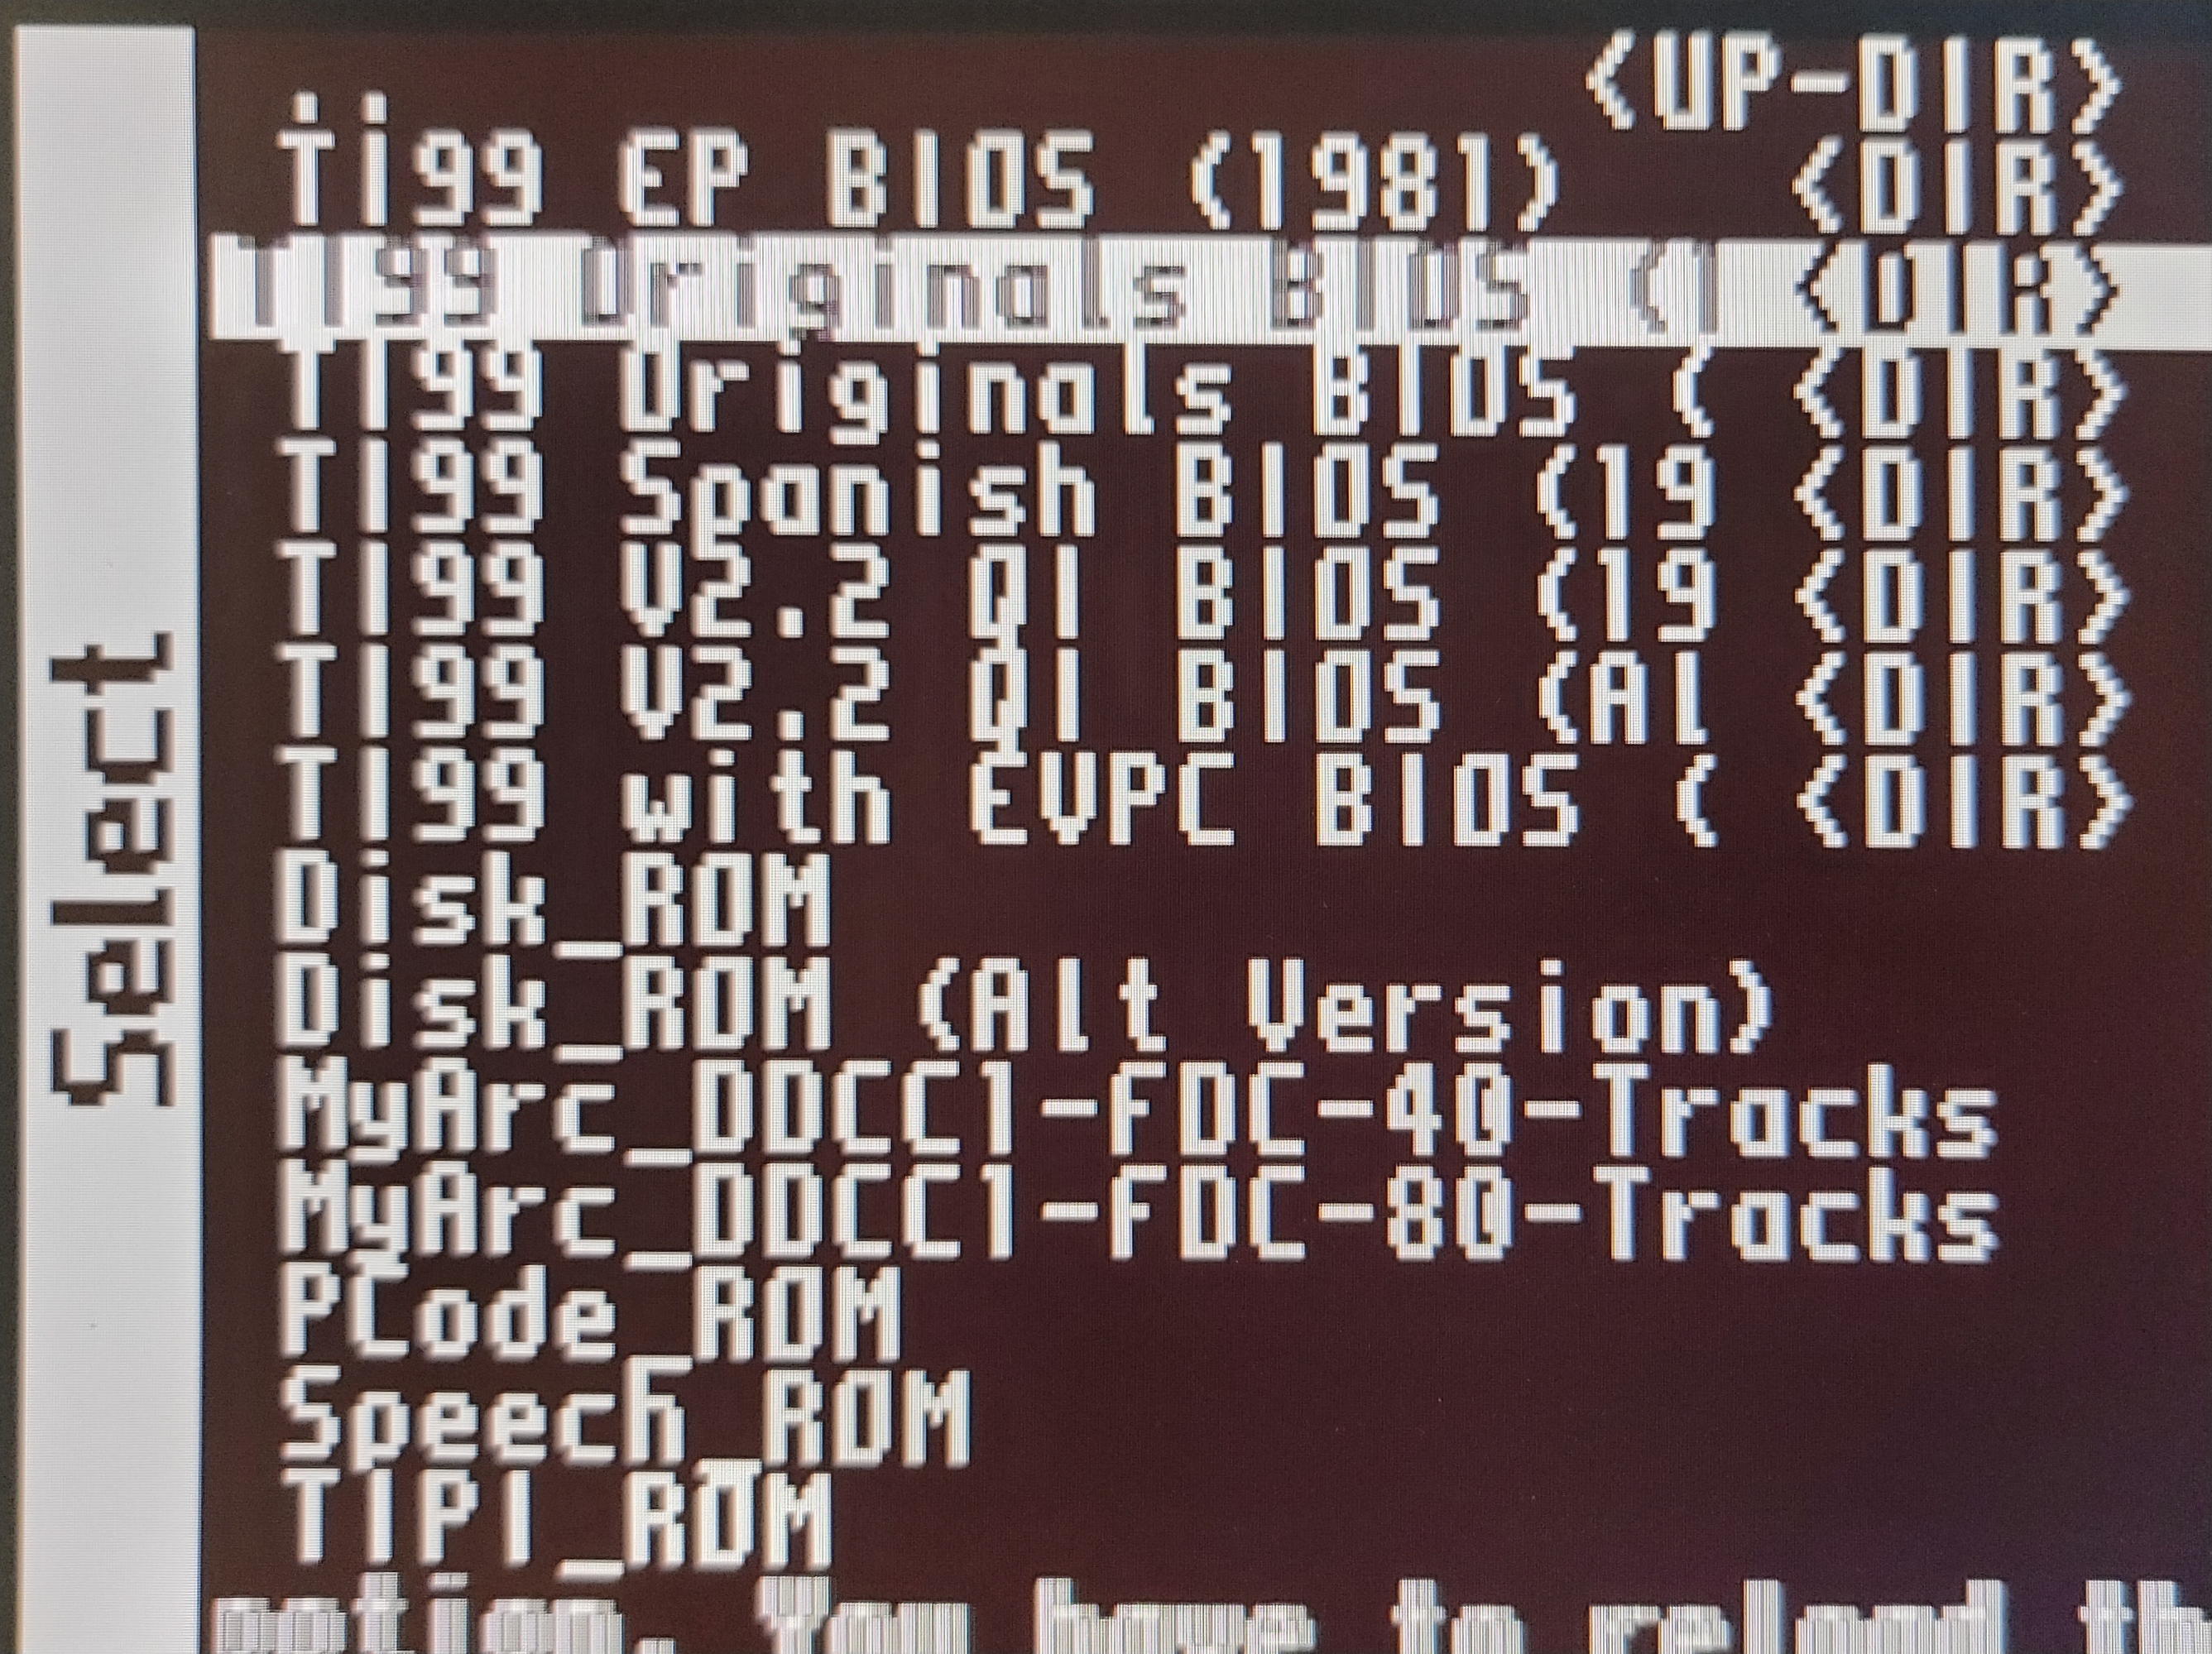 TI99 Originals BIOS